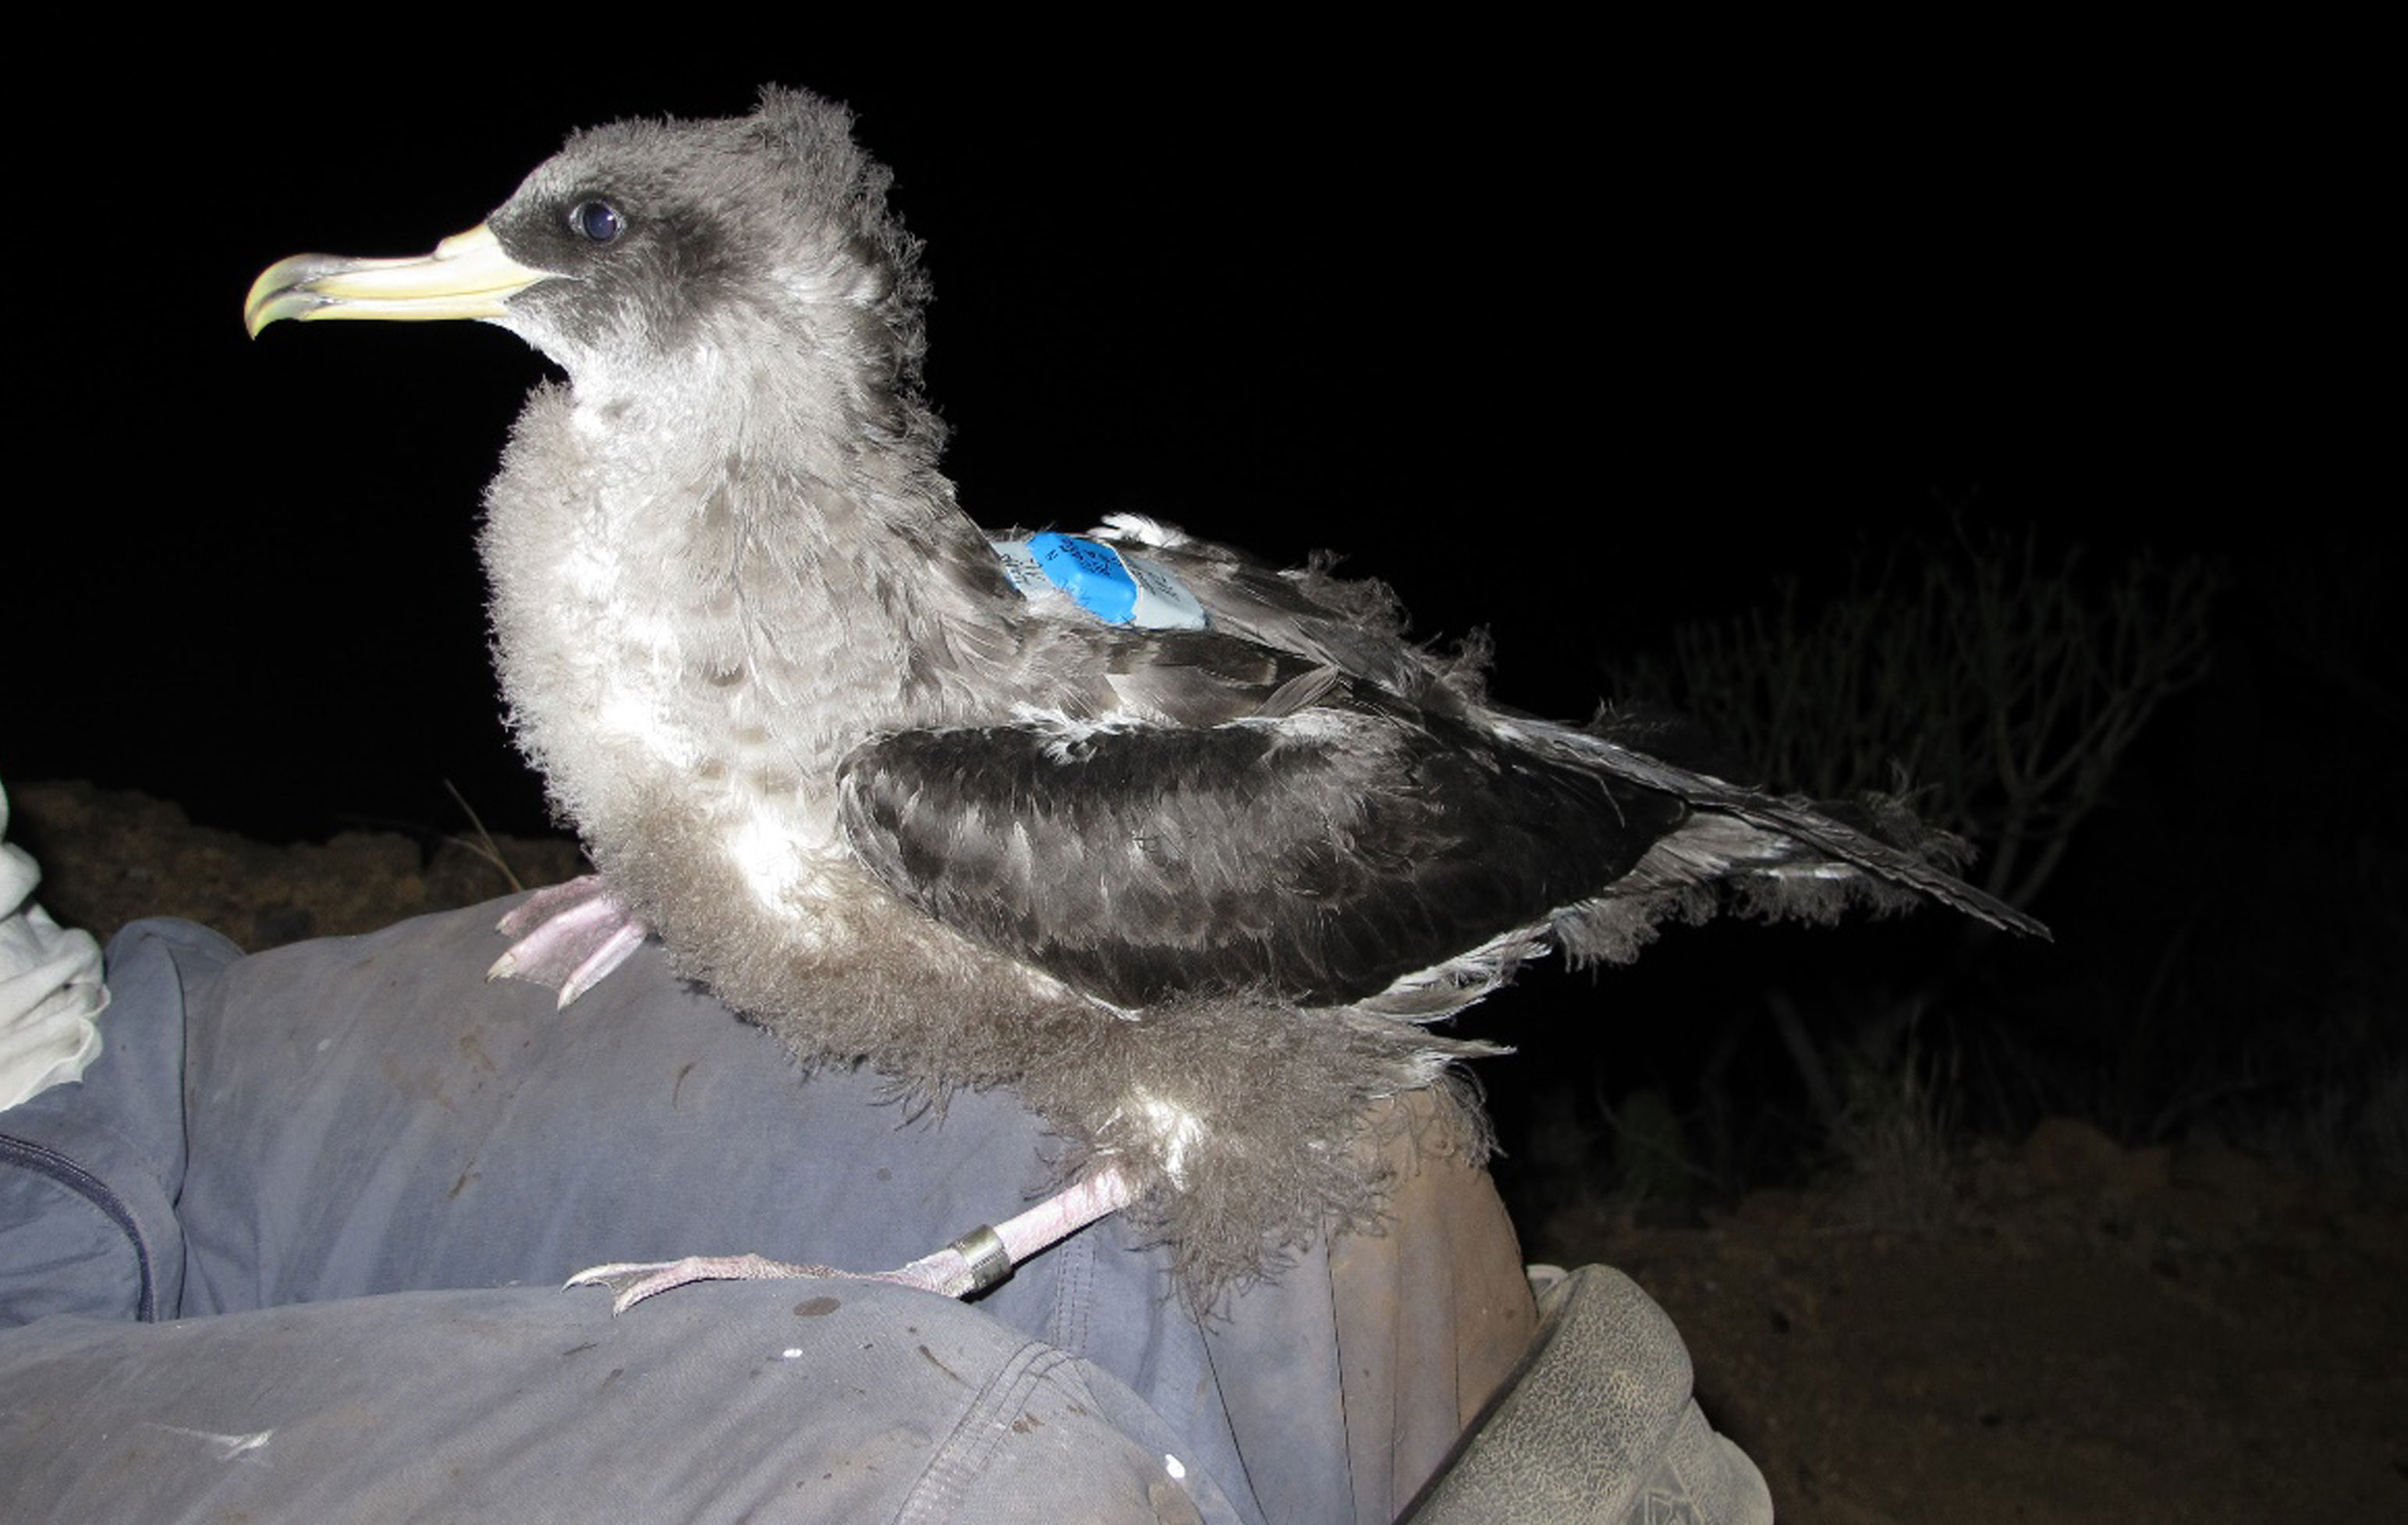 Imagen que muestra un pollo de pardela cenicienta con GPS en la espalda y anilla